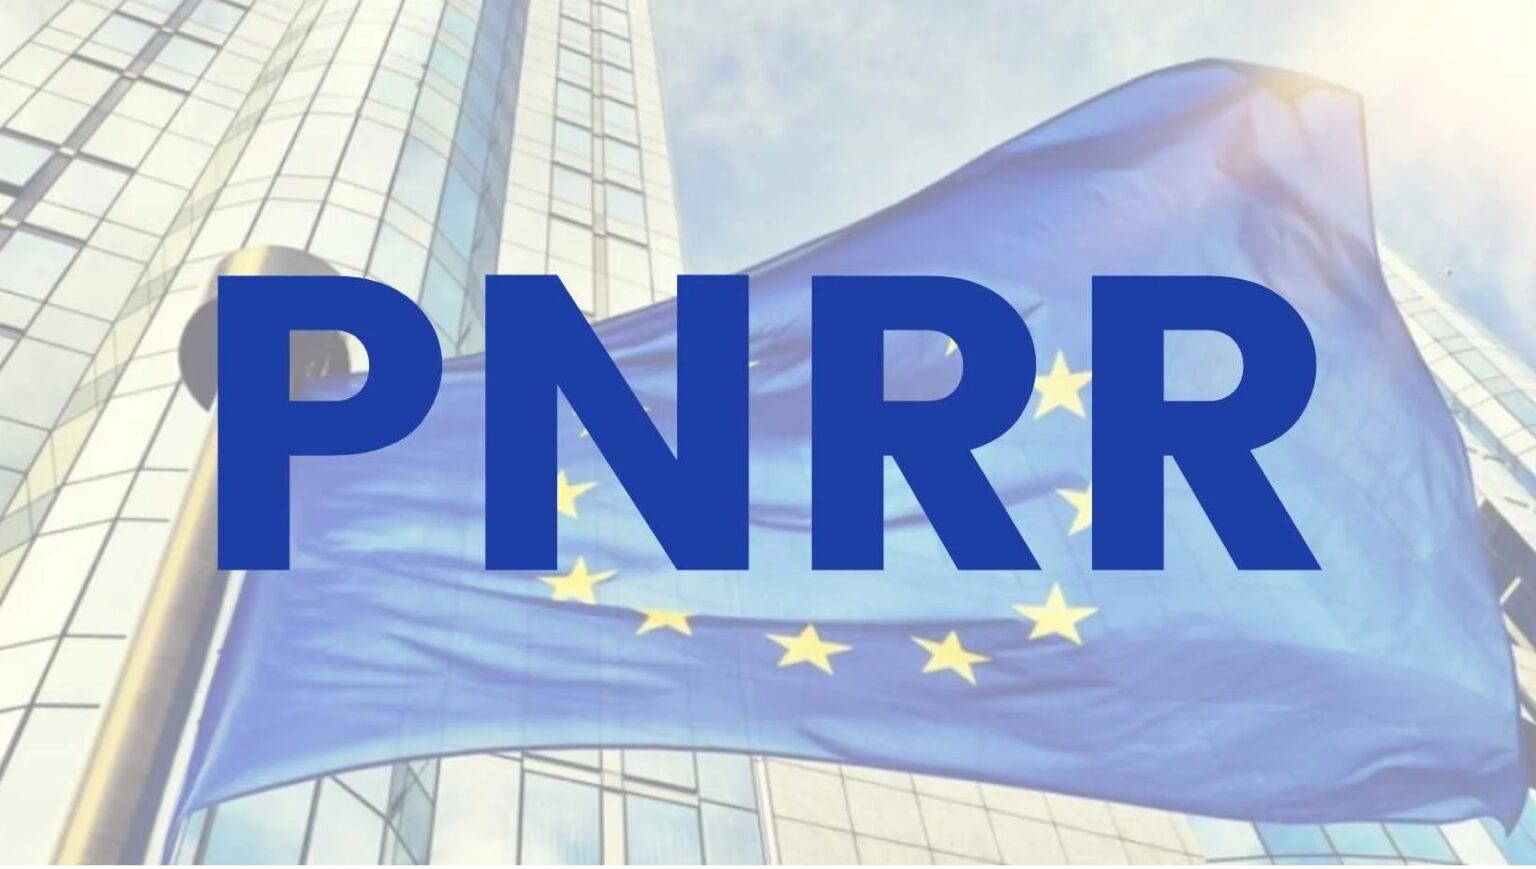 Immagine che raffigura Piano Nazionale di Ripresa e Resilienza (PNRR)